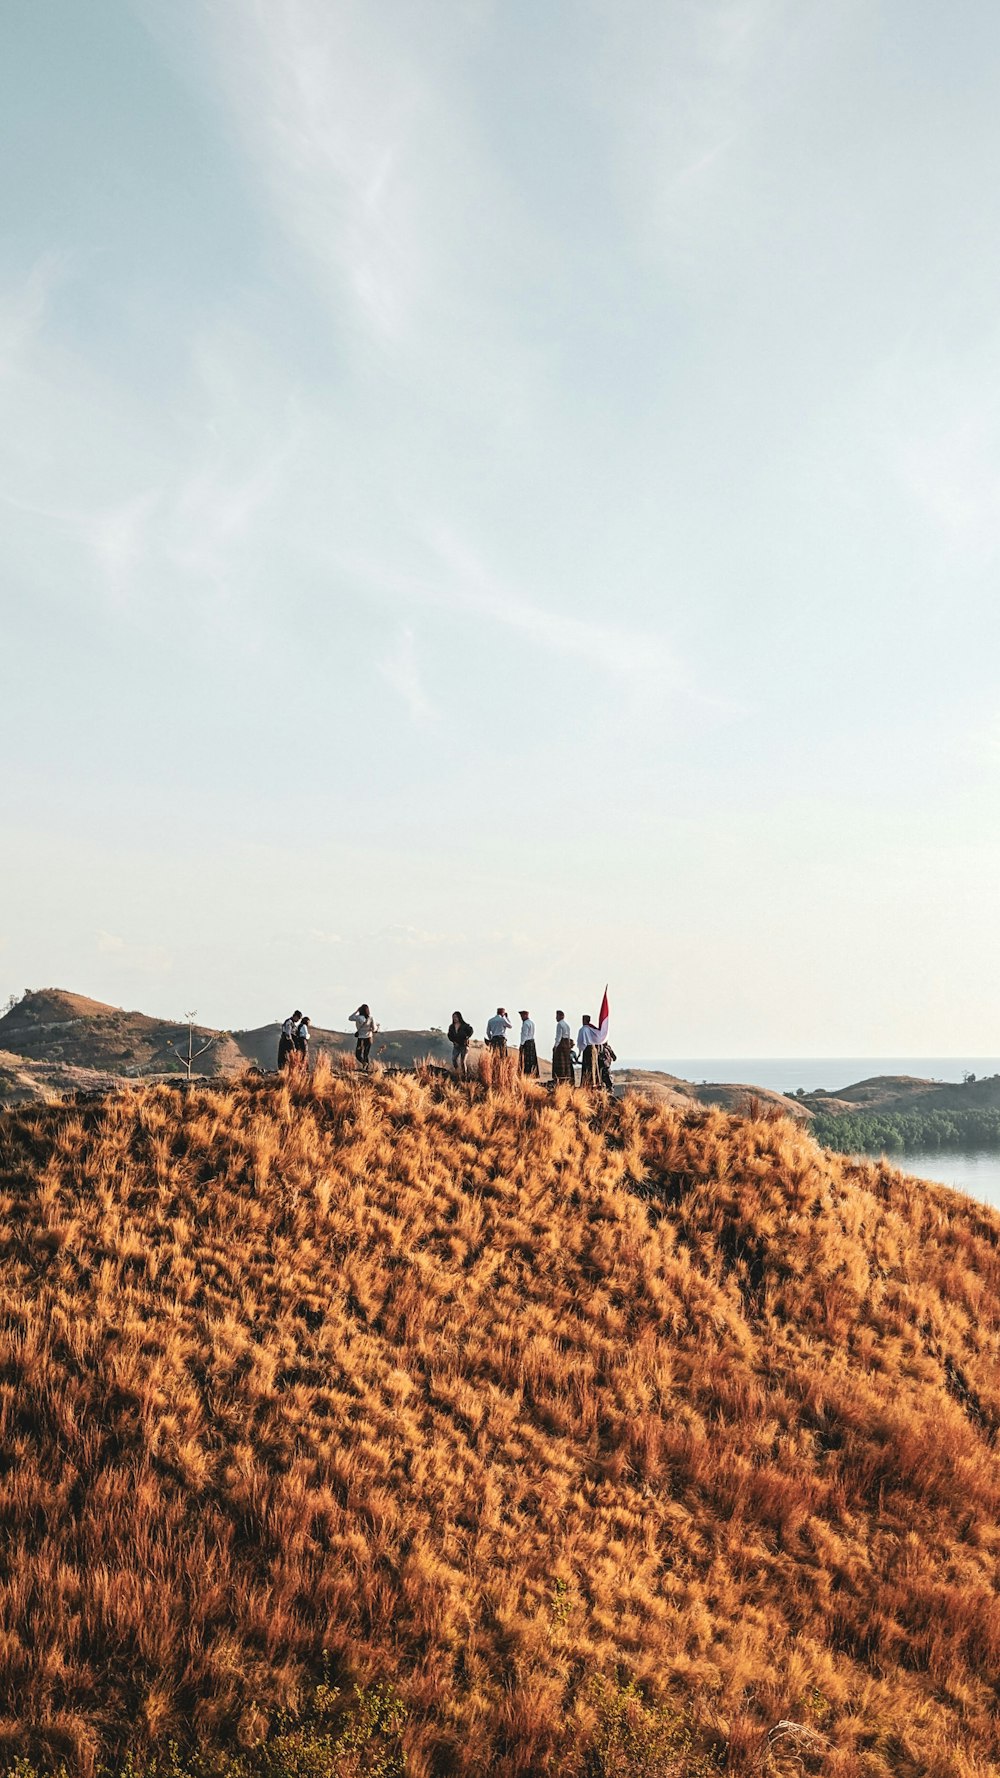 un groupe de personnes debout au sommet d’une colline couverte d’herbe